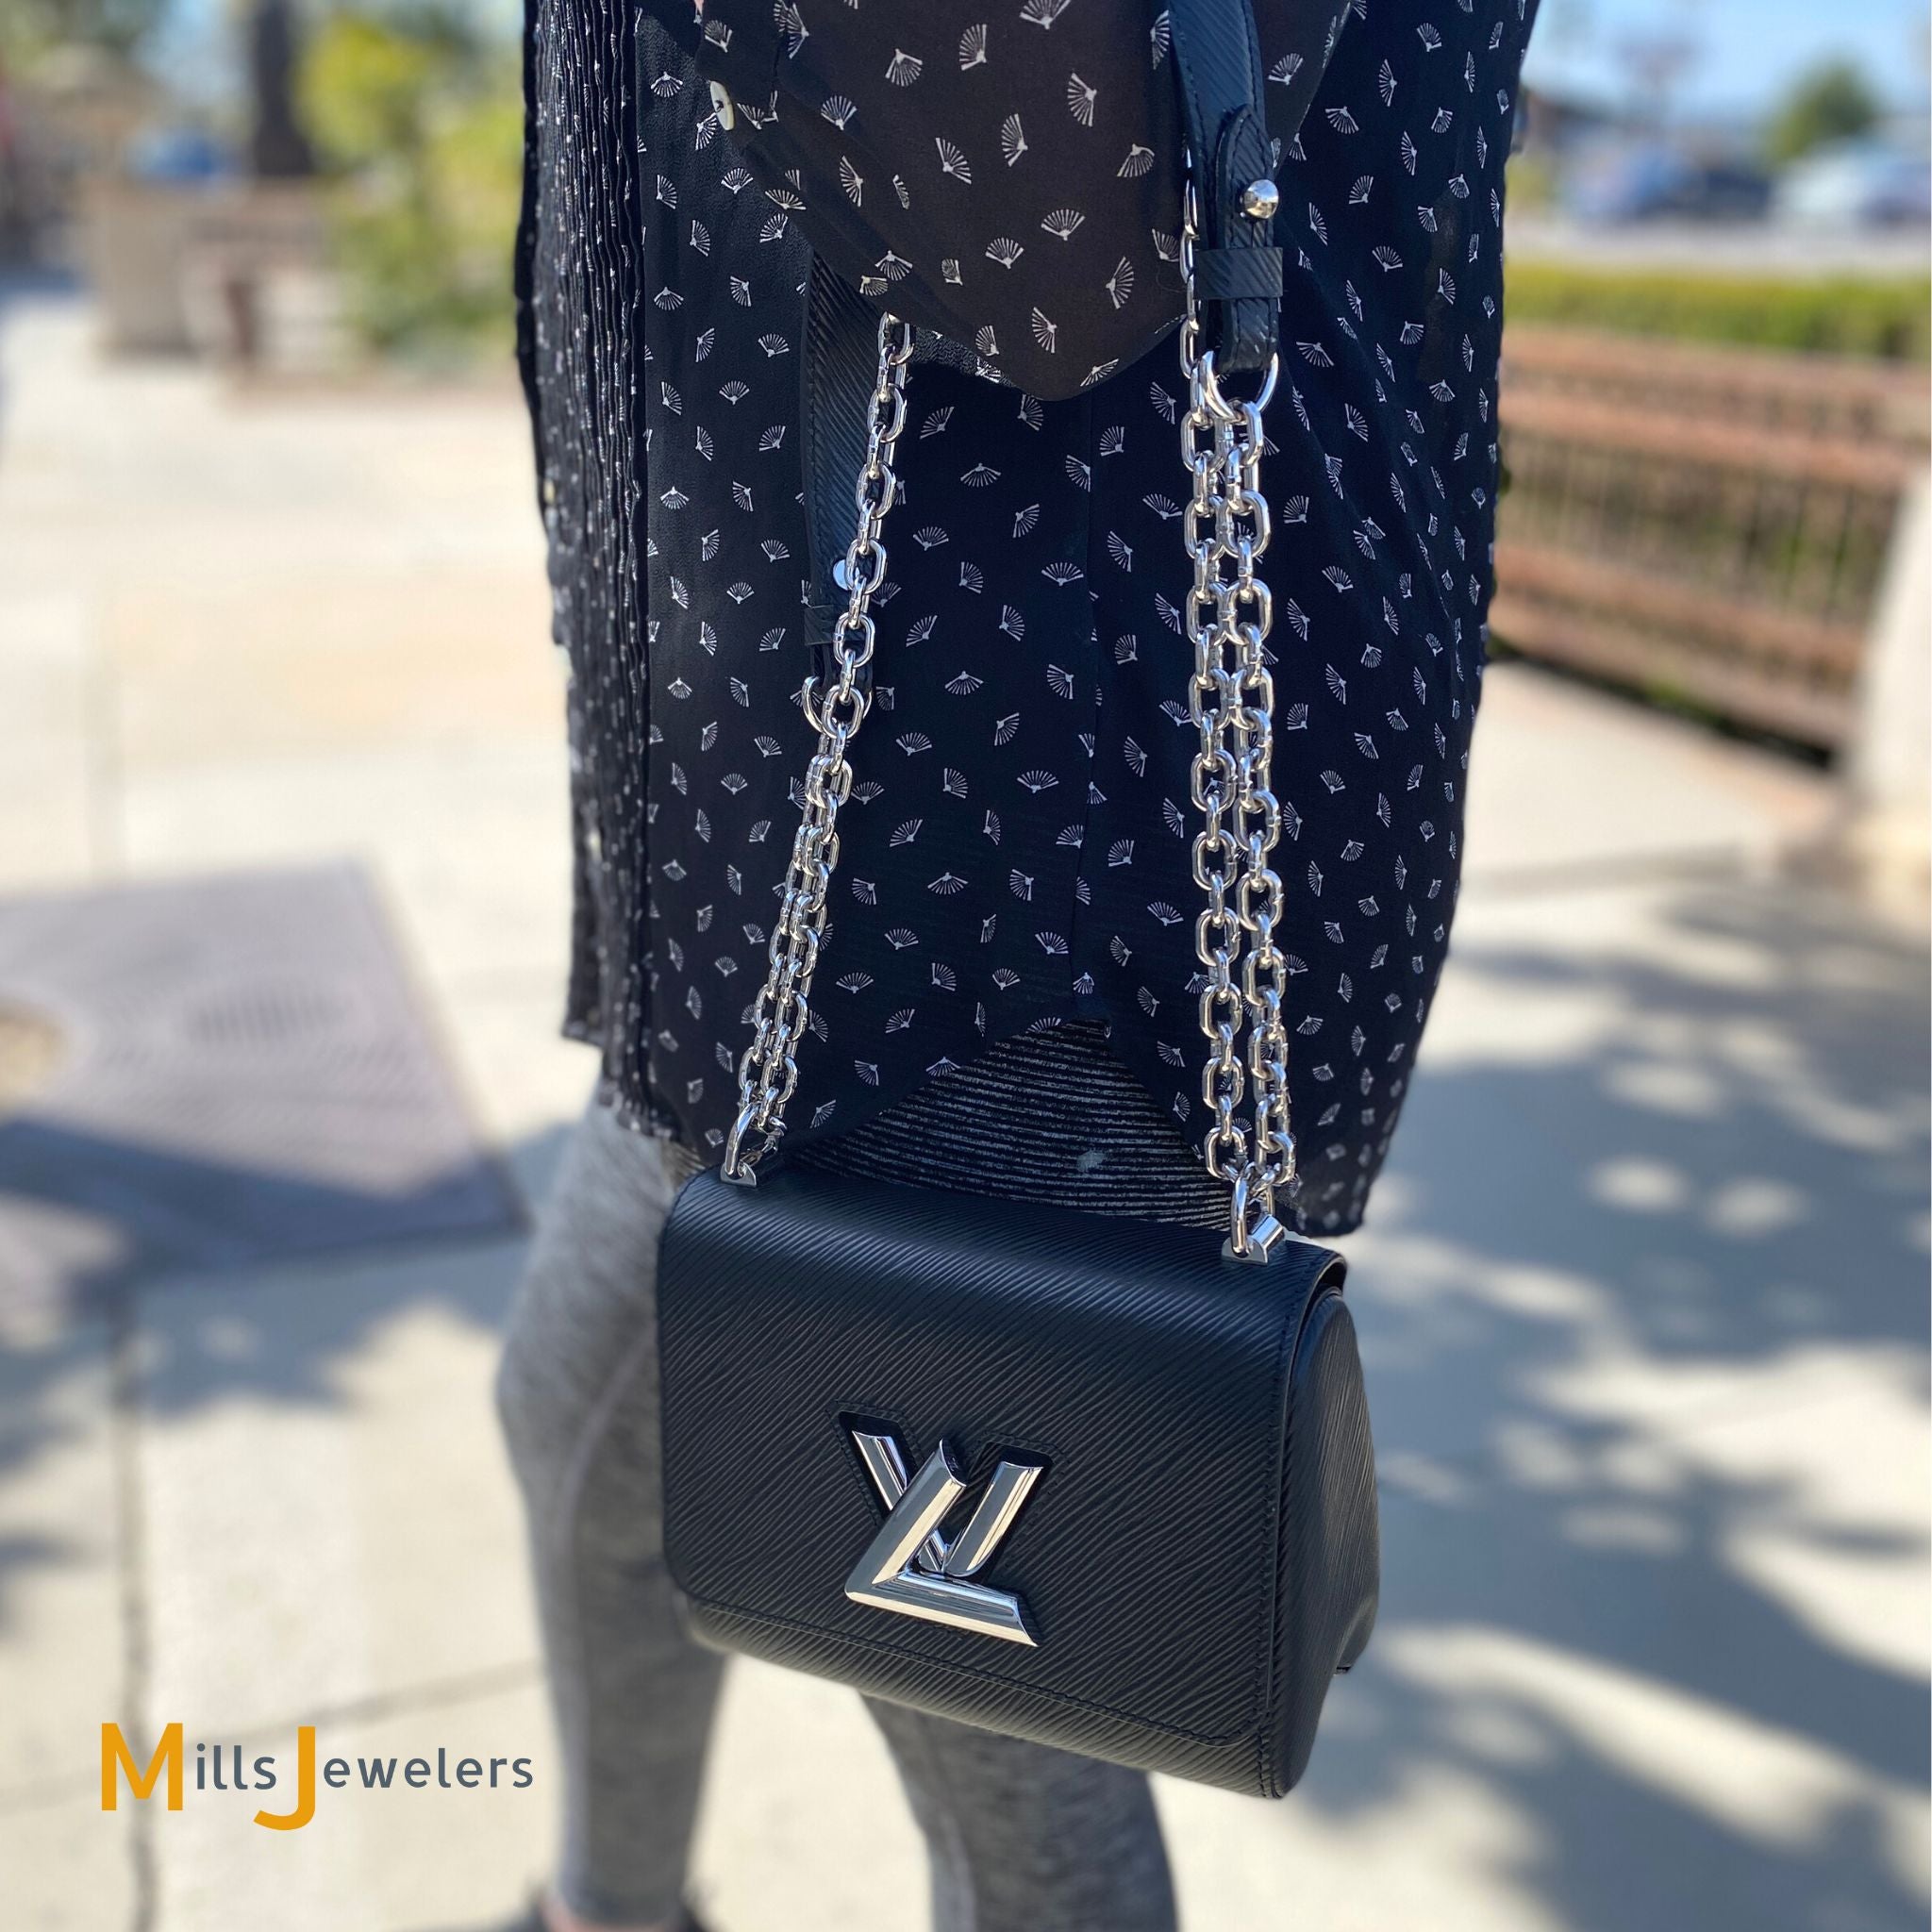 LOUIS VUITTON Louis Vuitton Twist PM Shoulder Bag M54243 Patent Leather  Noir